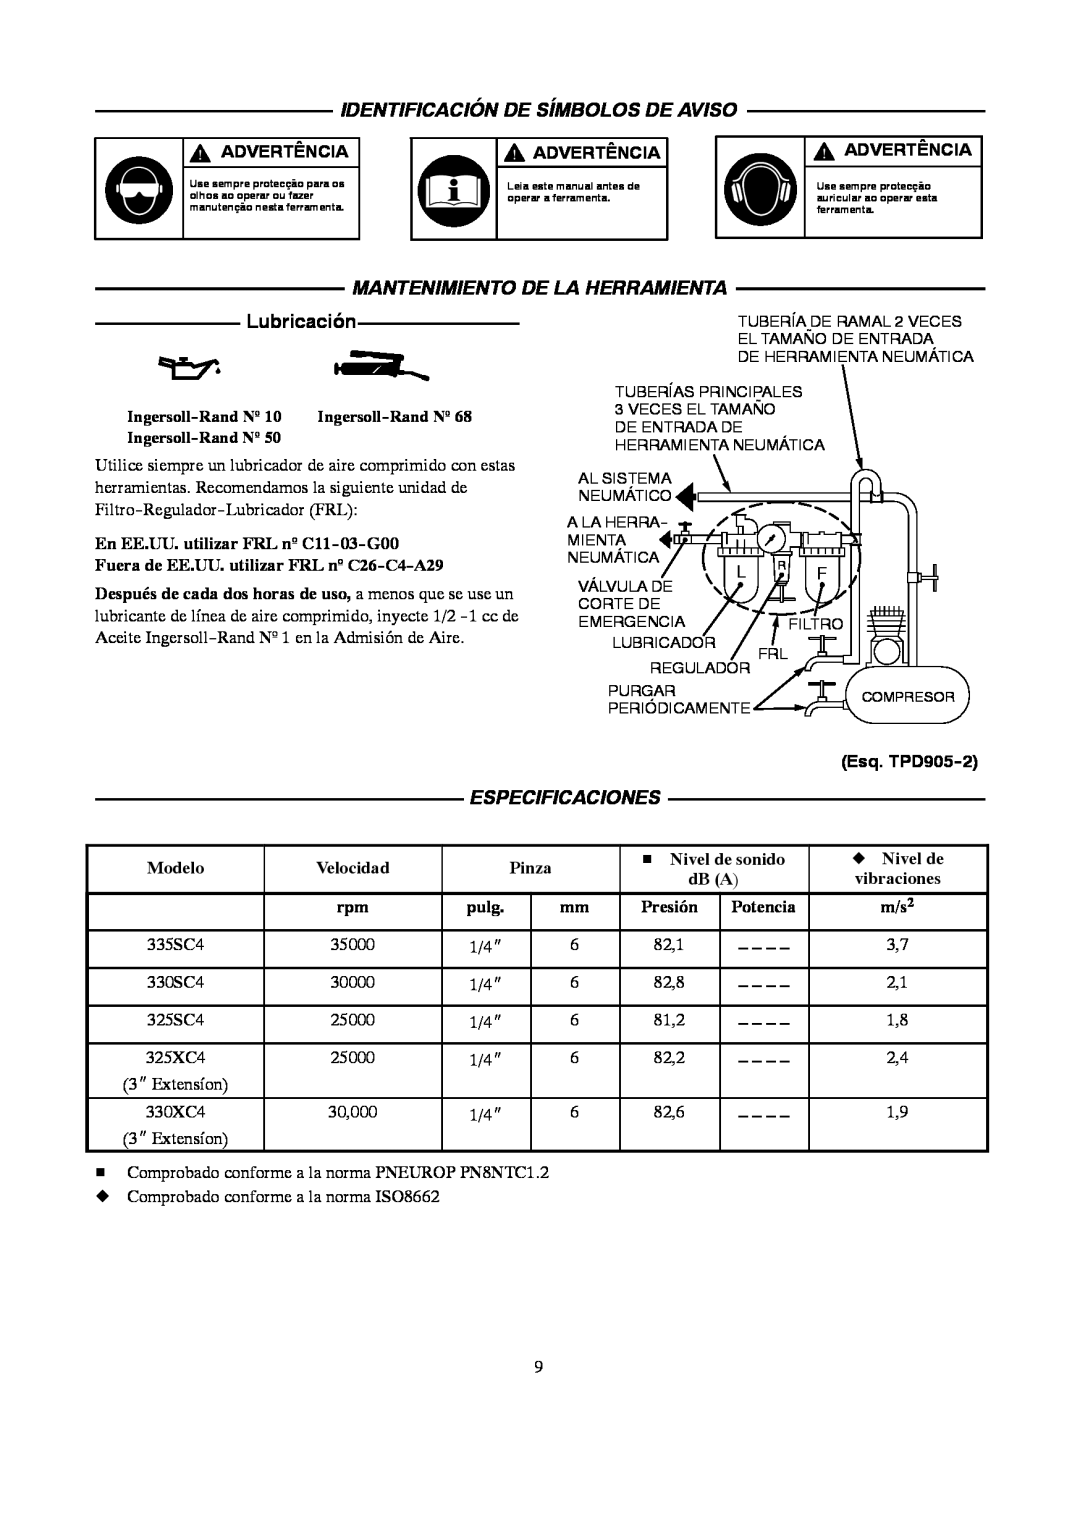 Ingersoll-Rand 4578217 Identificación De Símbolos De Aviso, Mantenimiento De La Herramienta, Lubricación, Especificaciones 